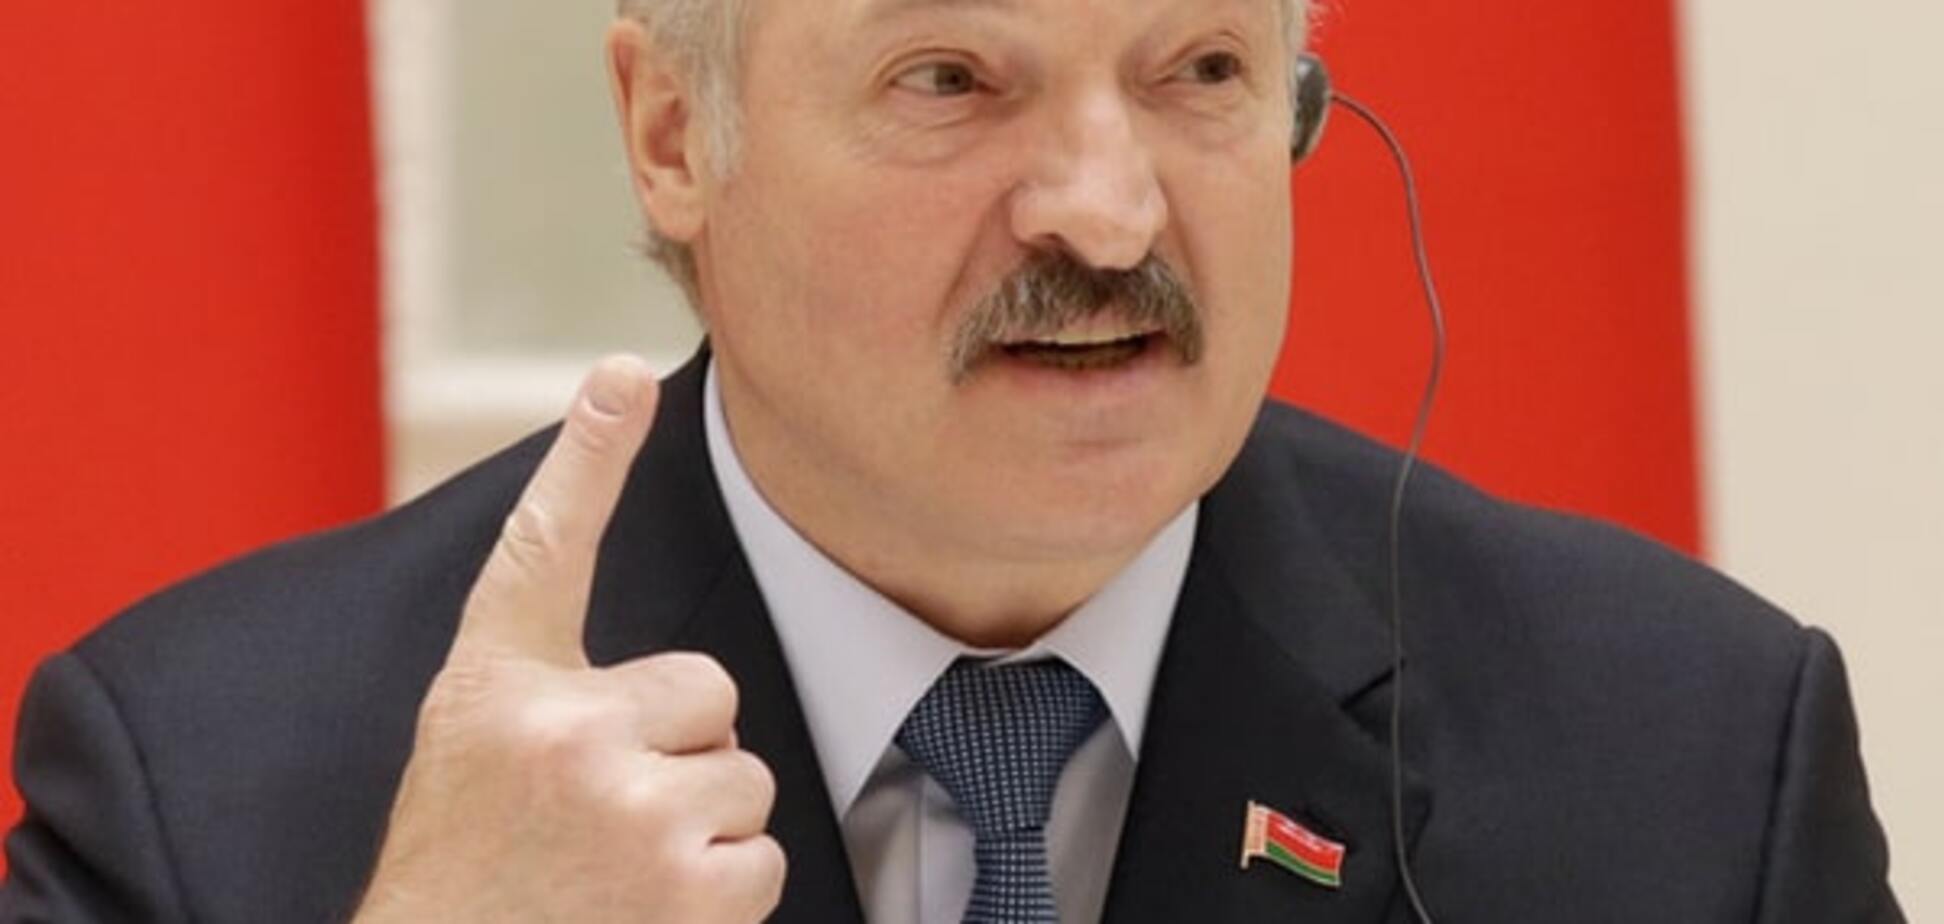 ЕС снимет санкции с Беларуси и Лукашенко - СМИ